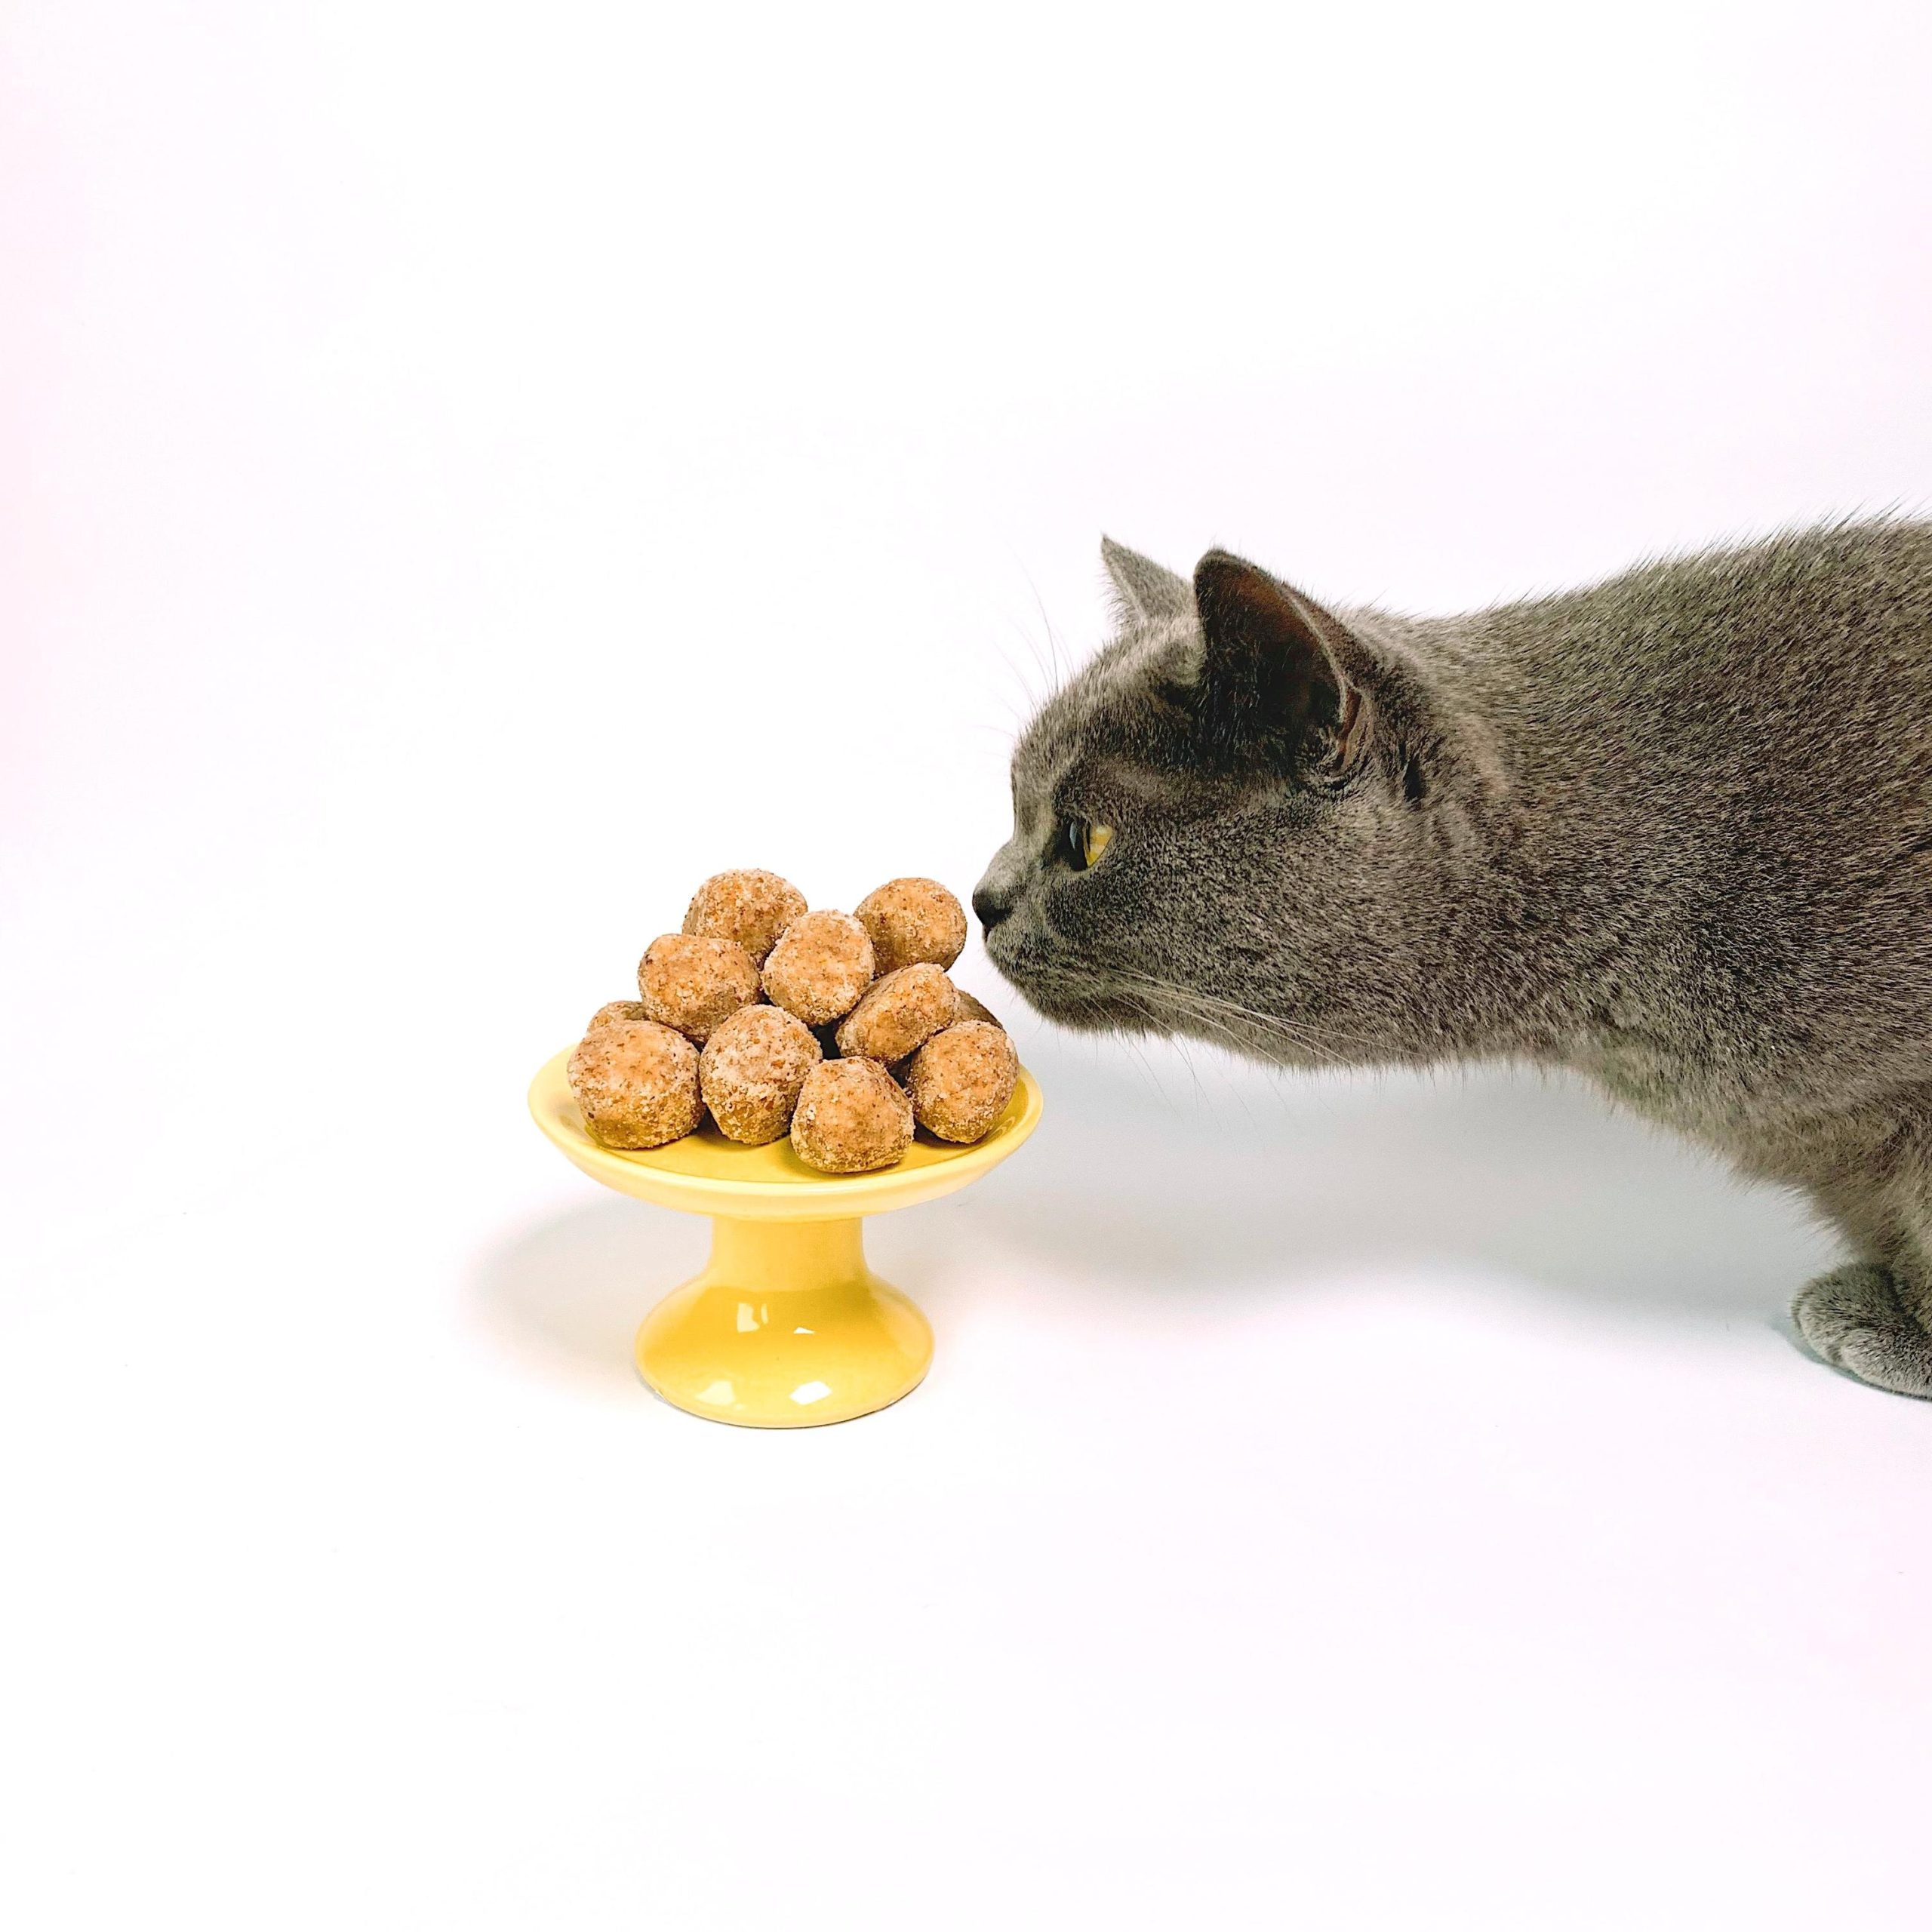 Imagen de un gato gris acercándose a un plato alto con bolas de comida